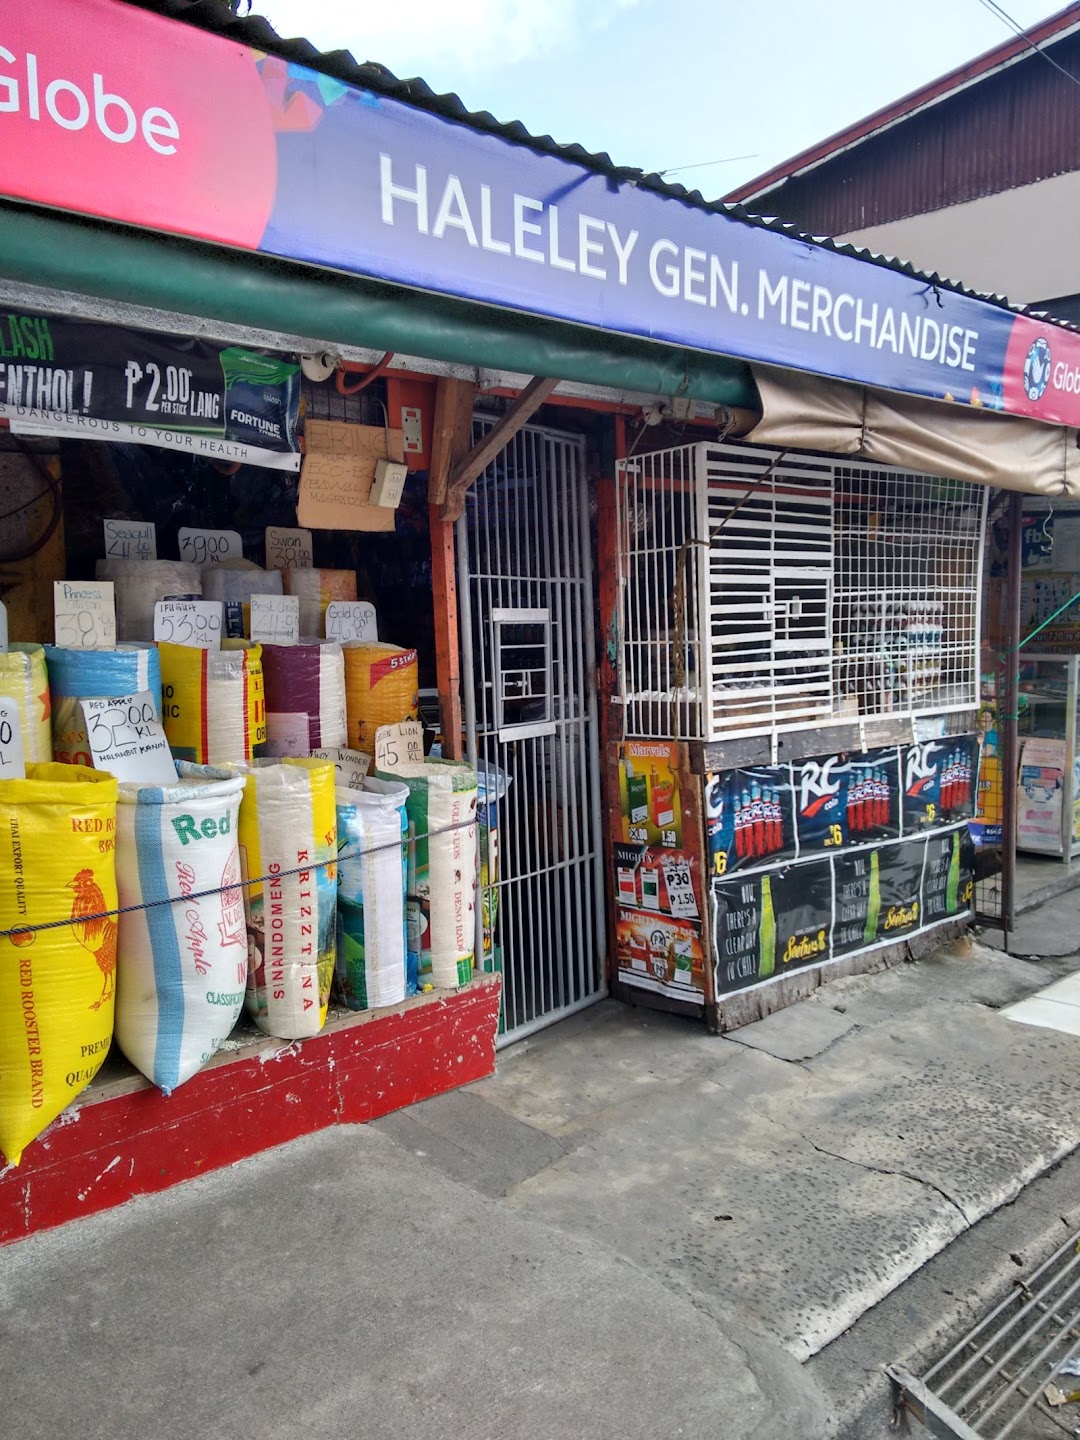 Haleley Gen. Merchandise